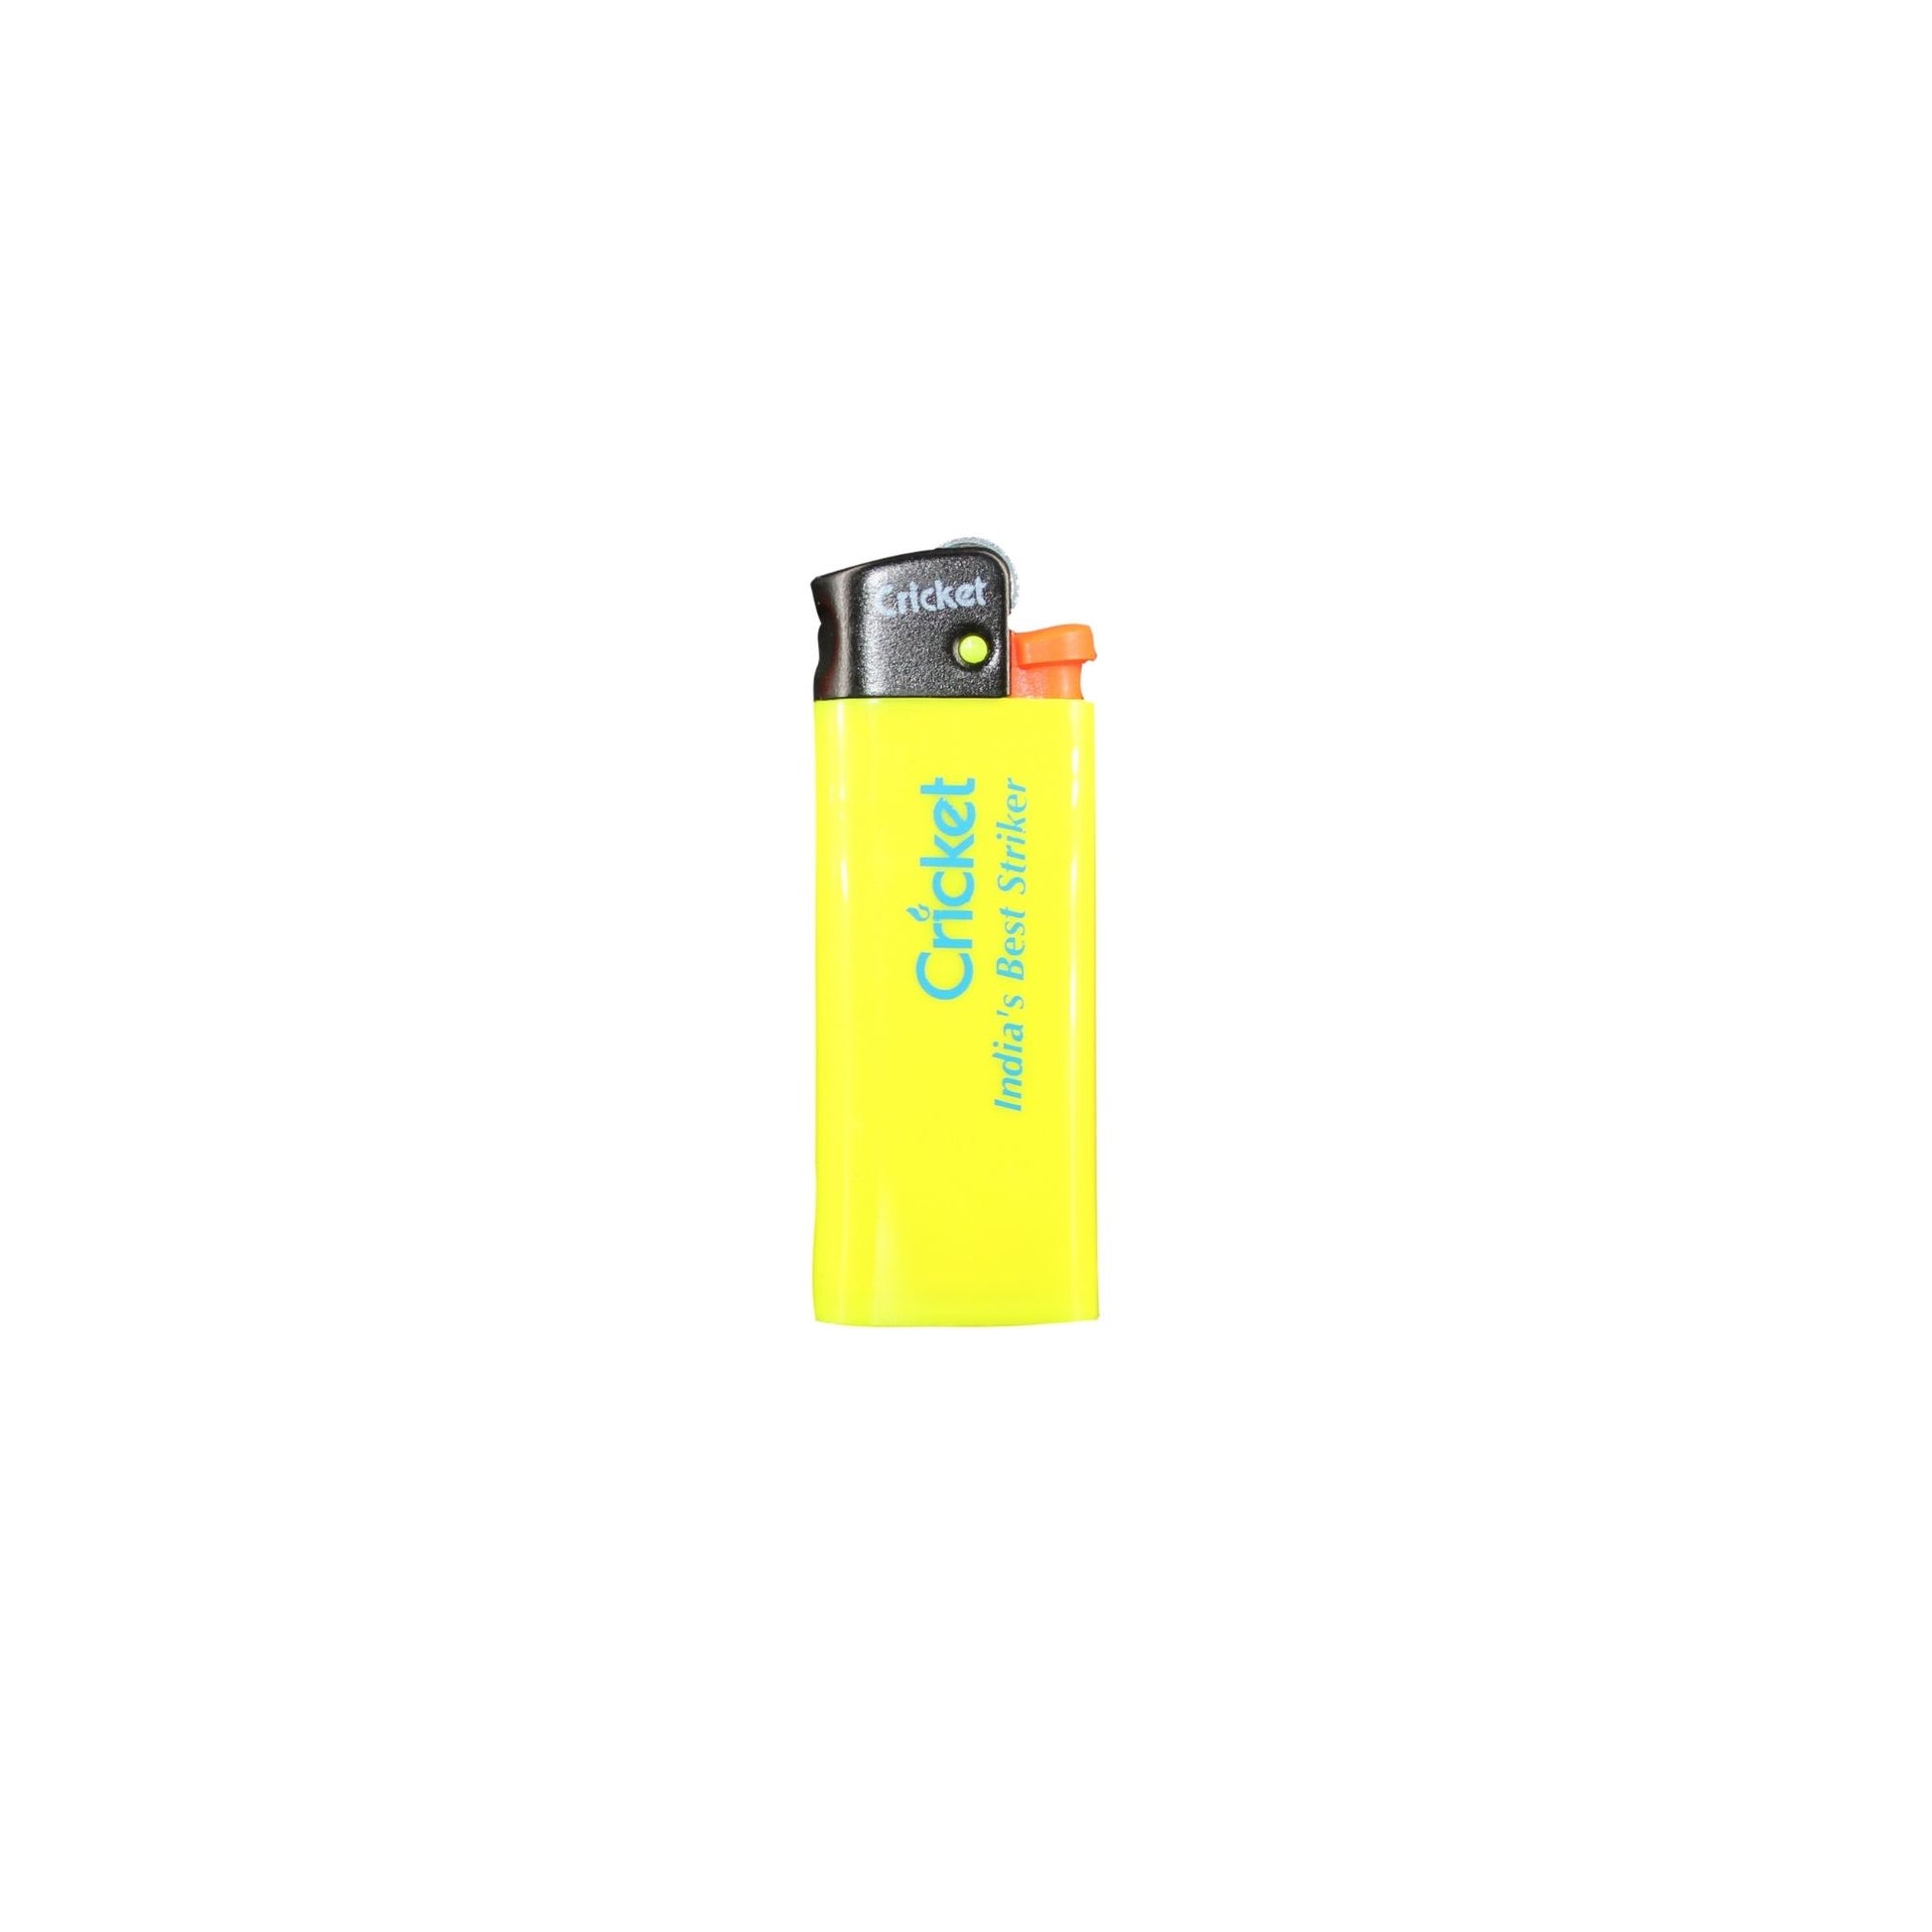 Buy CRICKET Pocket Lighter online in India at HighJack